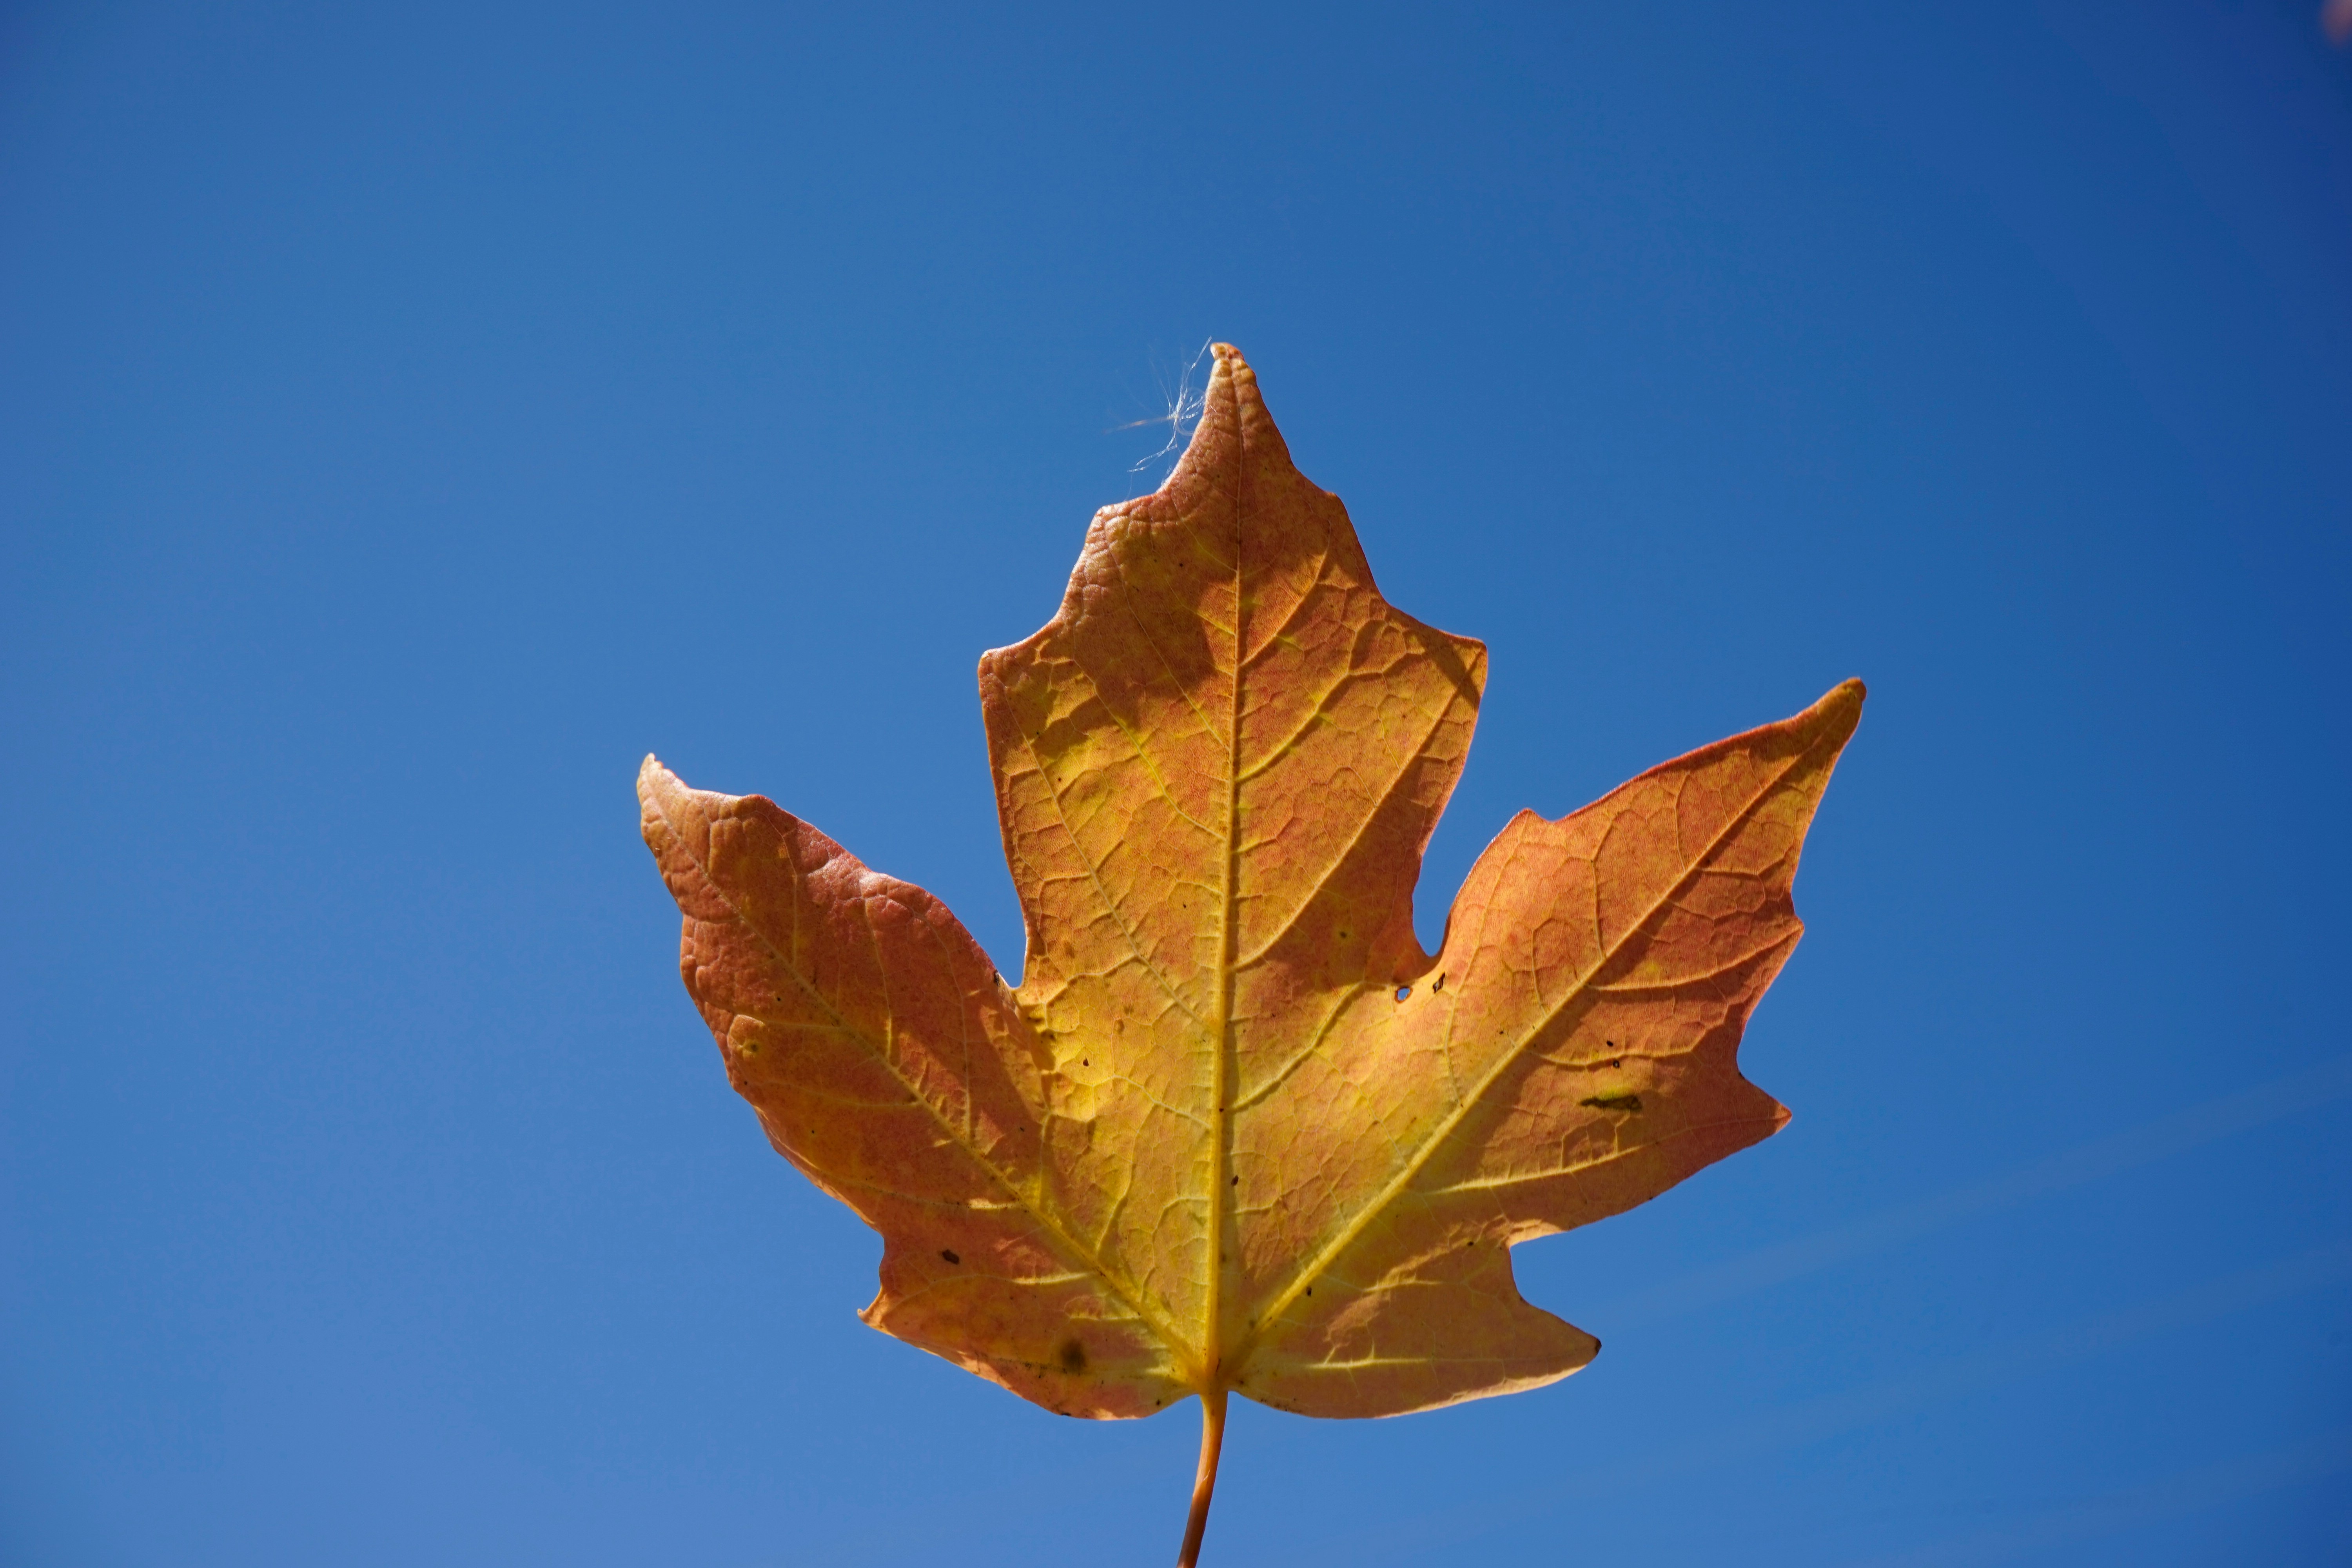 brown maple leaf under blue sky during daytime